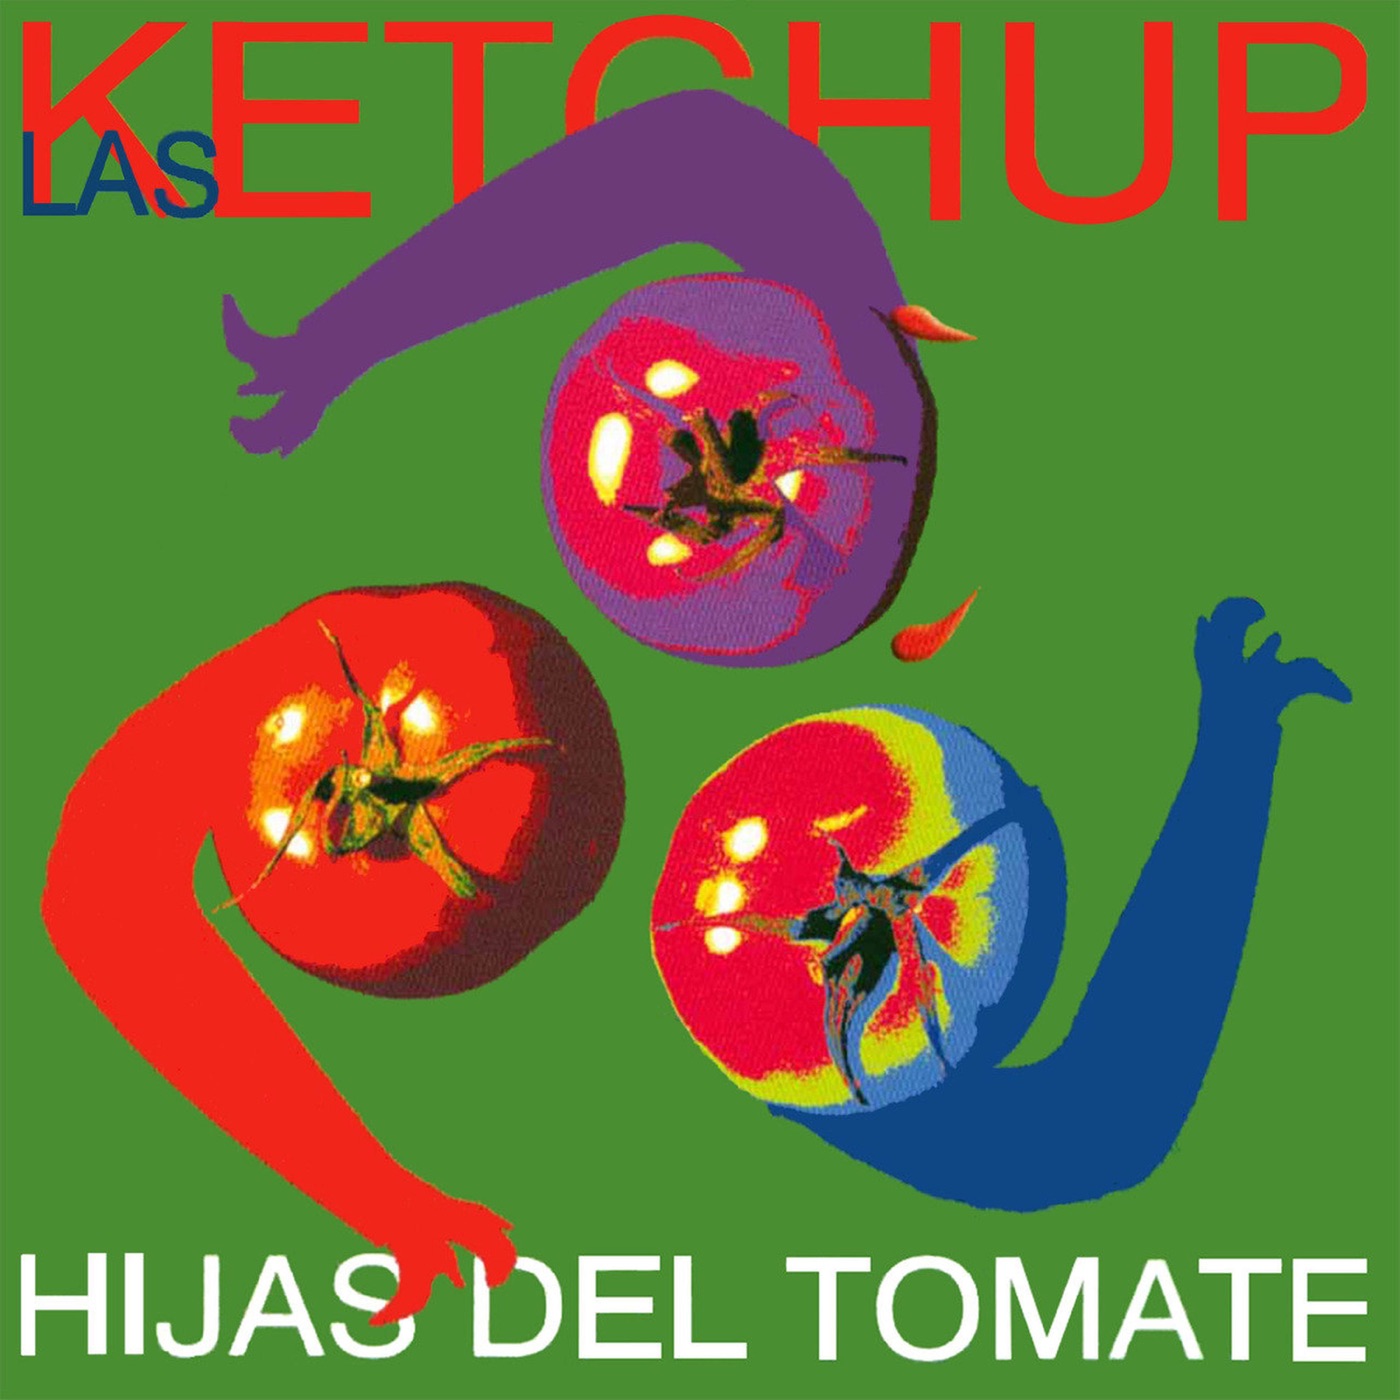 Hijas del Tomate by Las Ketchup